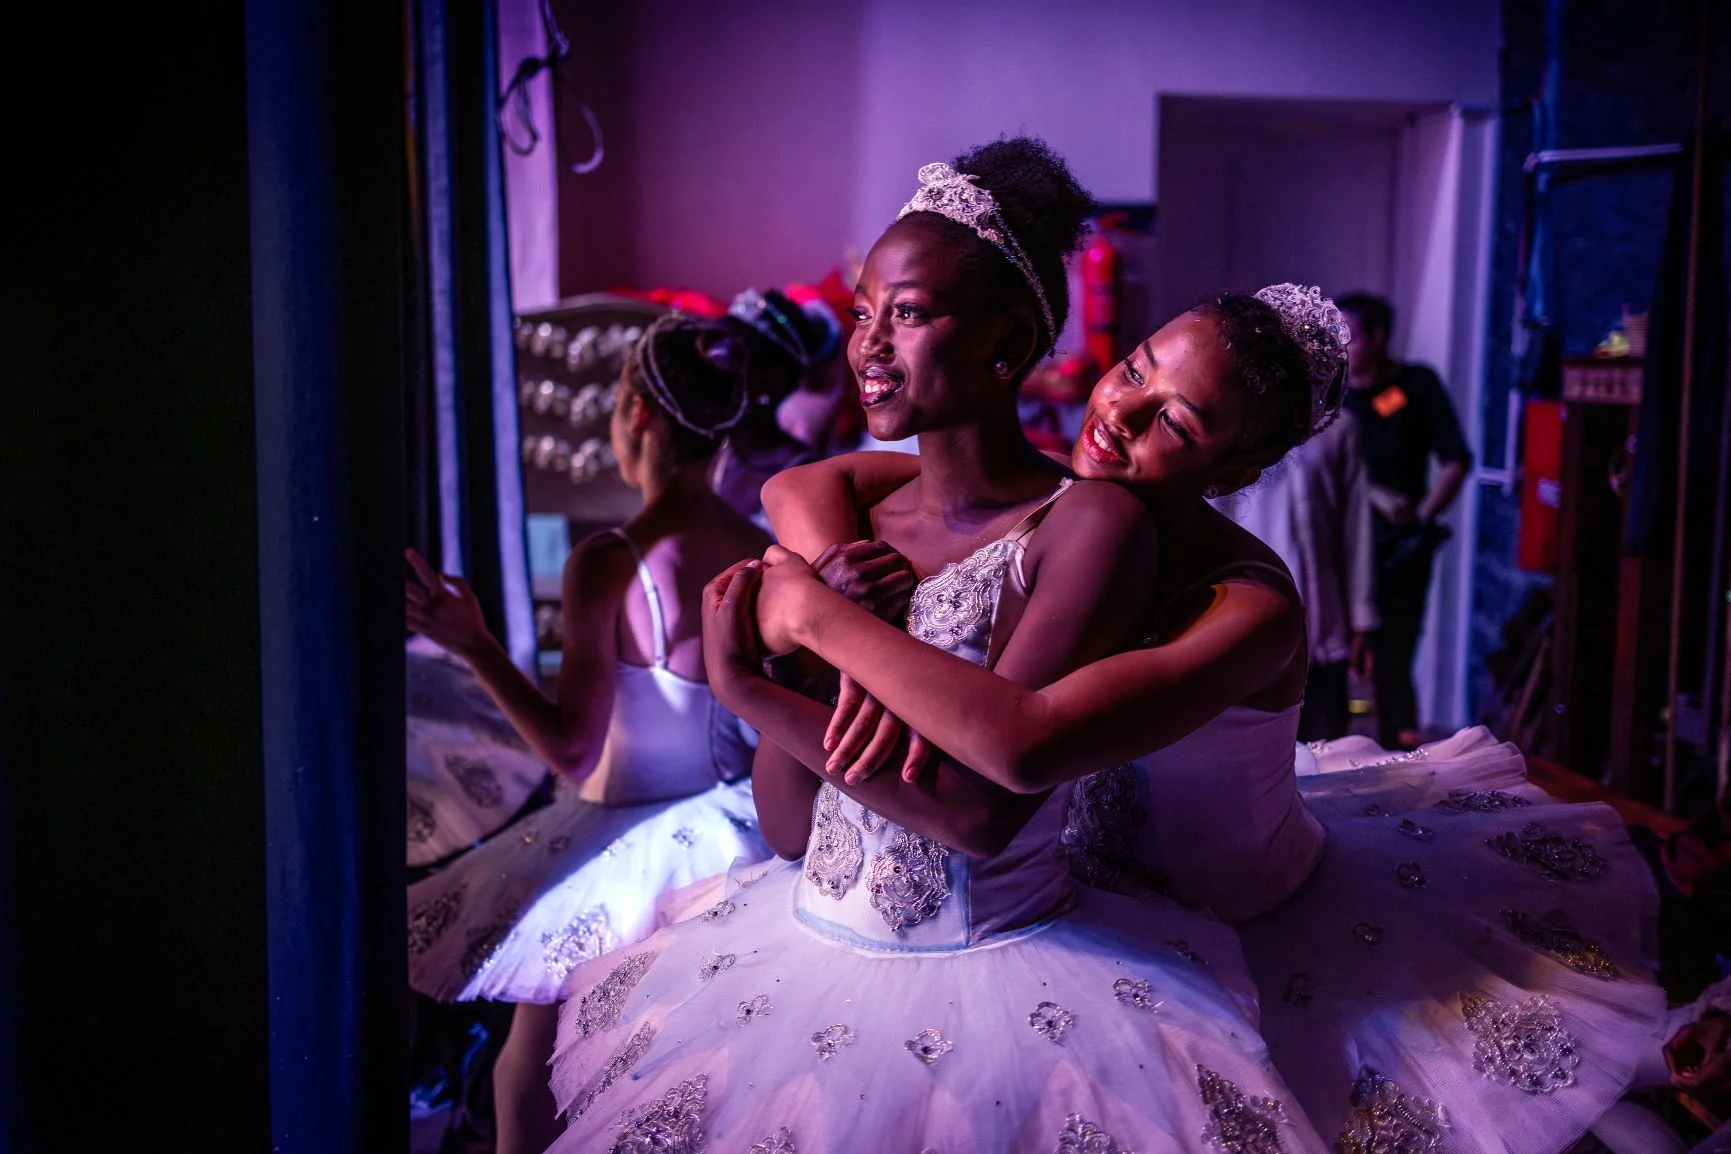 舞者Pauline Okumu（左）和Natalia Como（右）在肯亞國家劇院的後台相擁，她們正出演經典芭蕾舞劇《胡桃夾子》。二人來自肯亞舞蹈中心（Dance Centre Kenya），這所舞蹈學校不論學生能否支持訓練費用，一直培育具天賦的舞者，多年來已影響許多出身貧困而有抱負的年輕人。照片攝於十二月。（LUIS TATO / AFP）